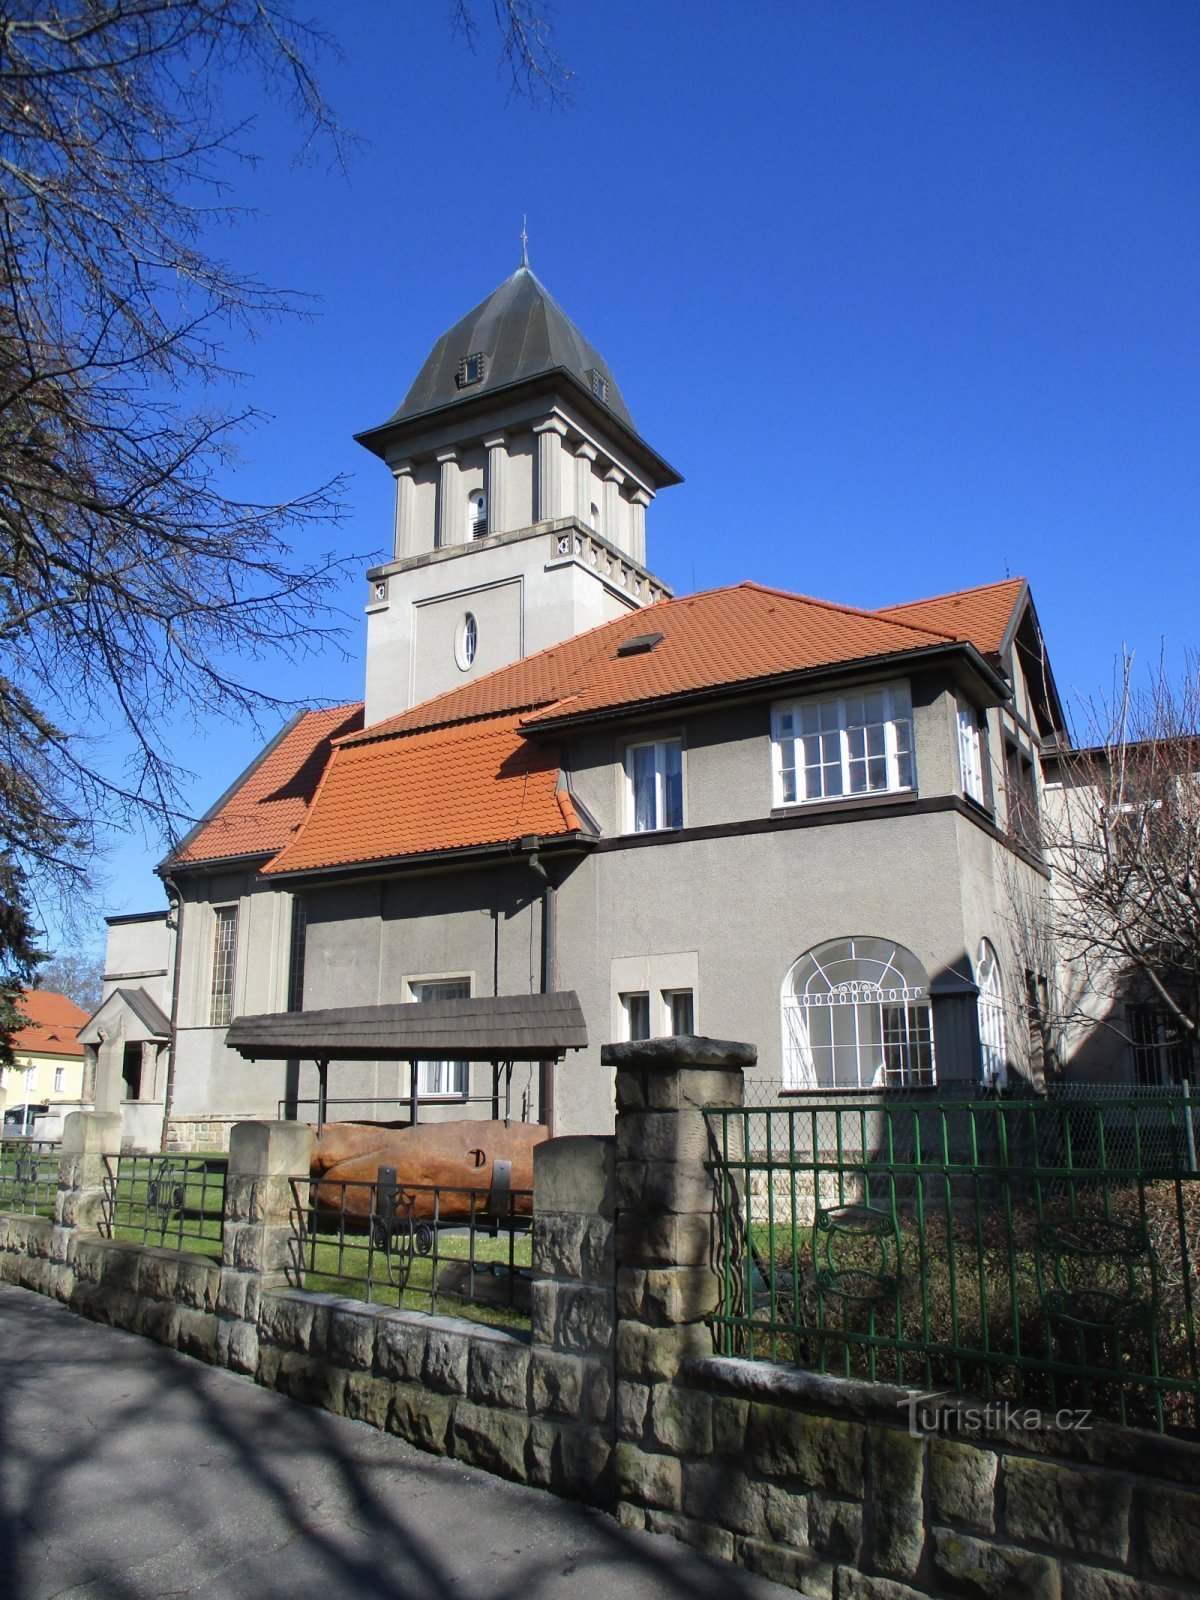 Église évangélique avec presbytère (Hradec Králové, 19.3.2020/XNUMX/XNUMX)